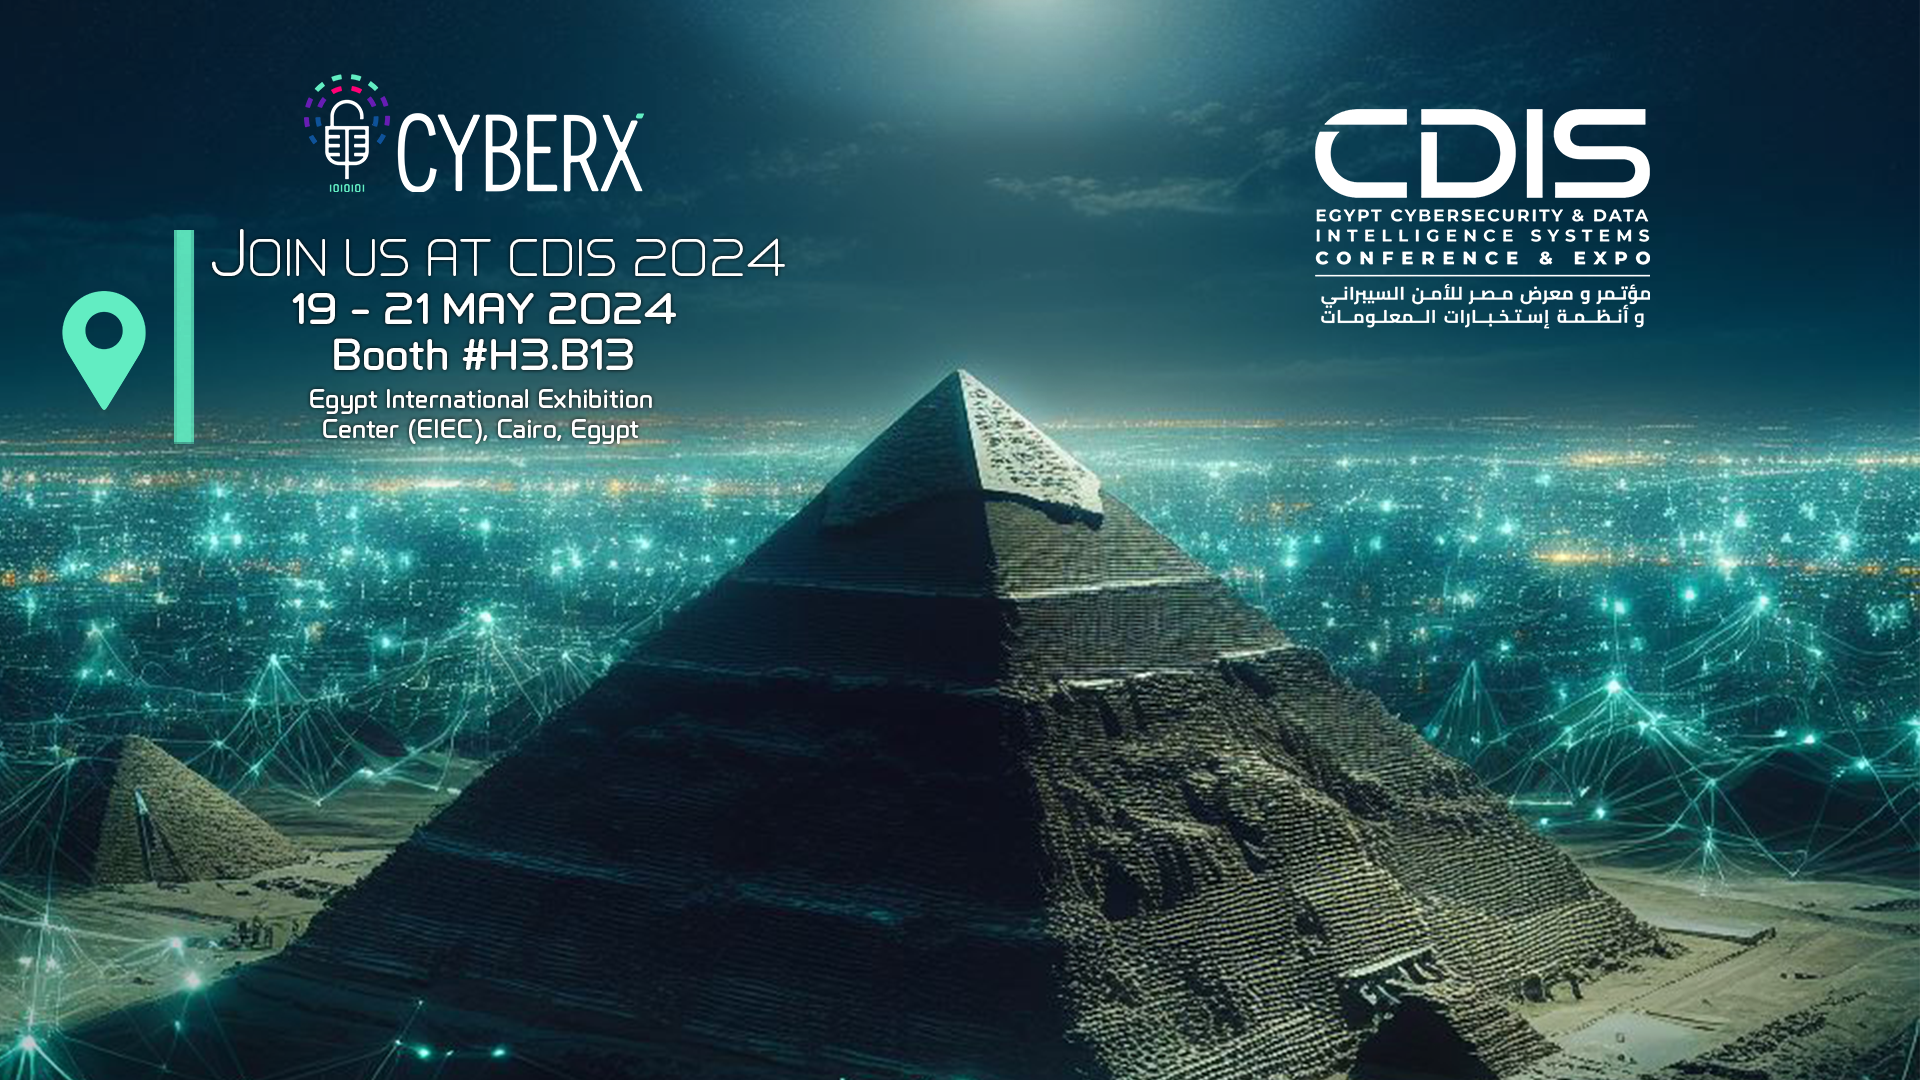 Cyberx شريك التوعية المتميز لحدث CDIS